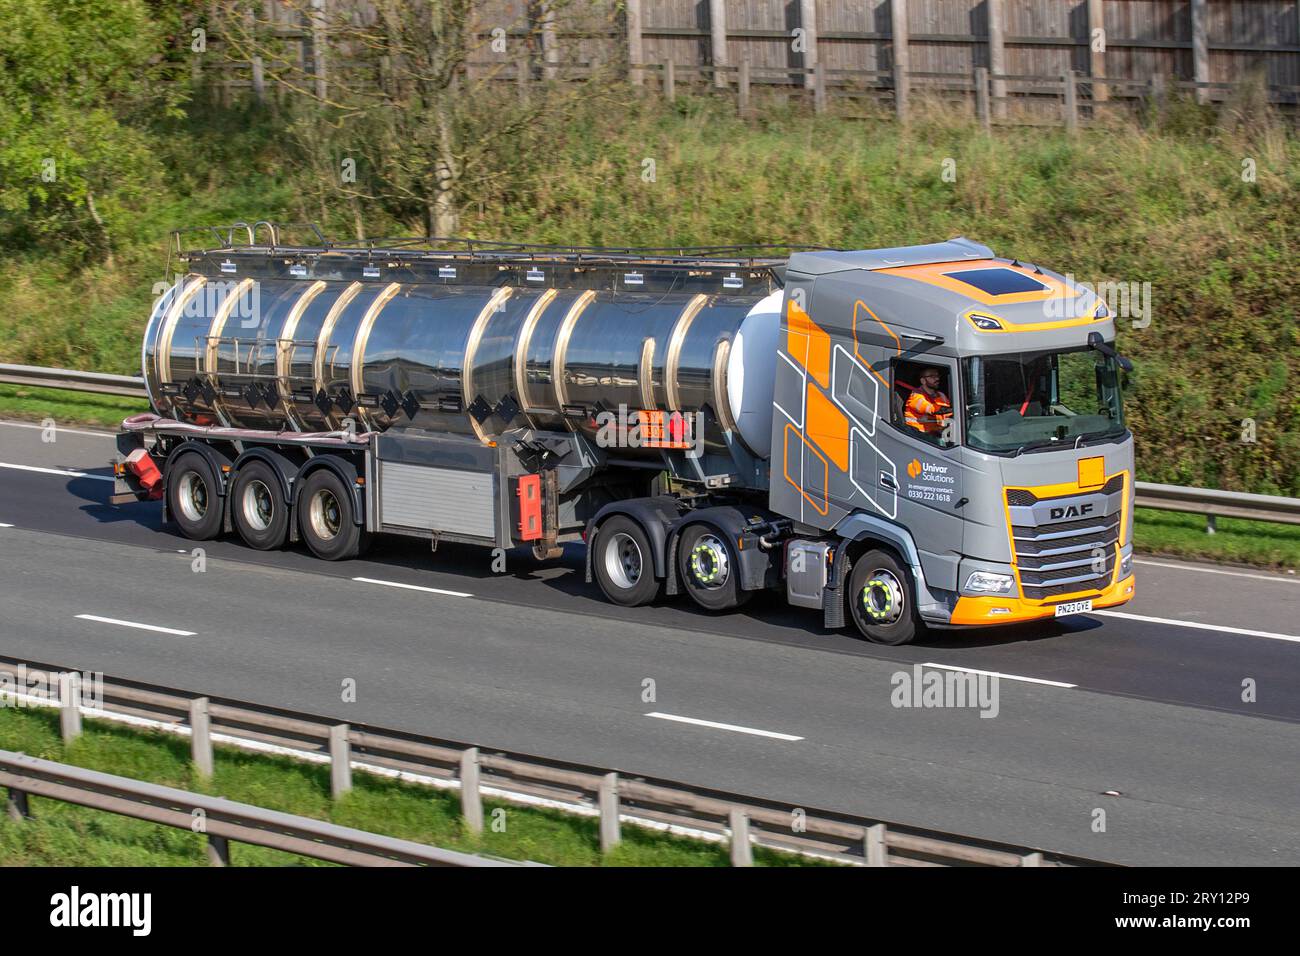 Univar Solutions Management Services Company ; camions à température contrôlée et camions-citernes chauffés. DAF Trucks Diesel 12902 cc ; voyageant à grande vitesse sur l'autoroute M6 dans le Grand Manchester, Royaume-Uni Banque D'Images